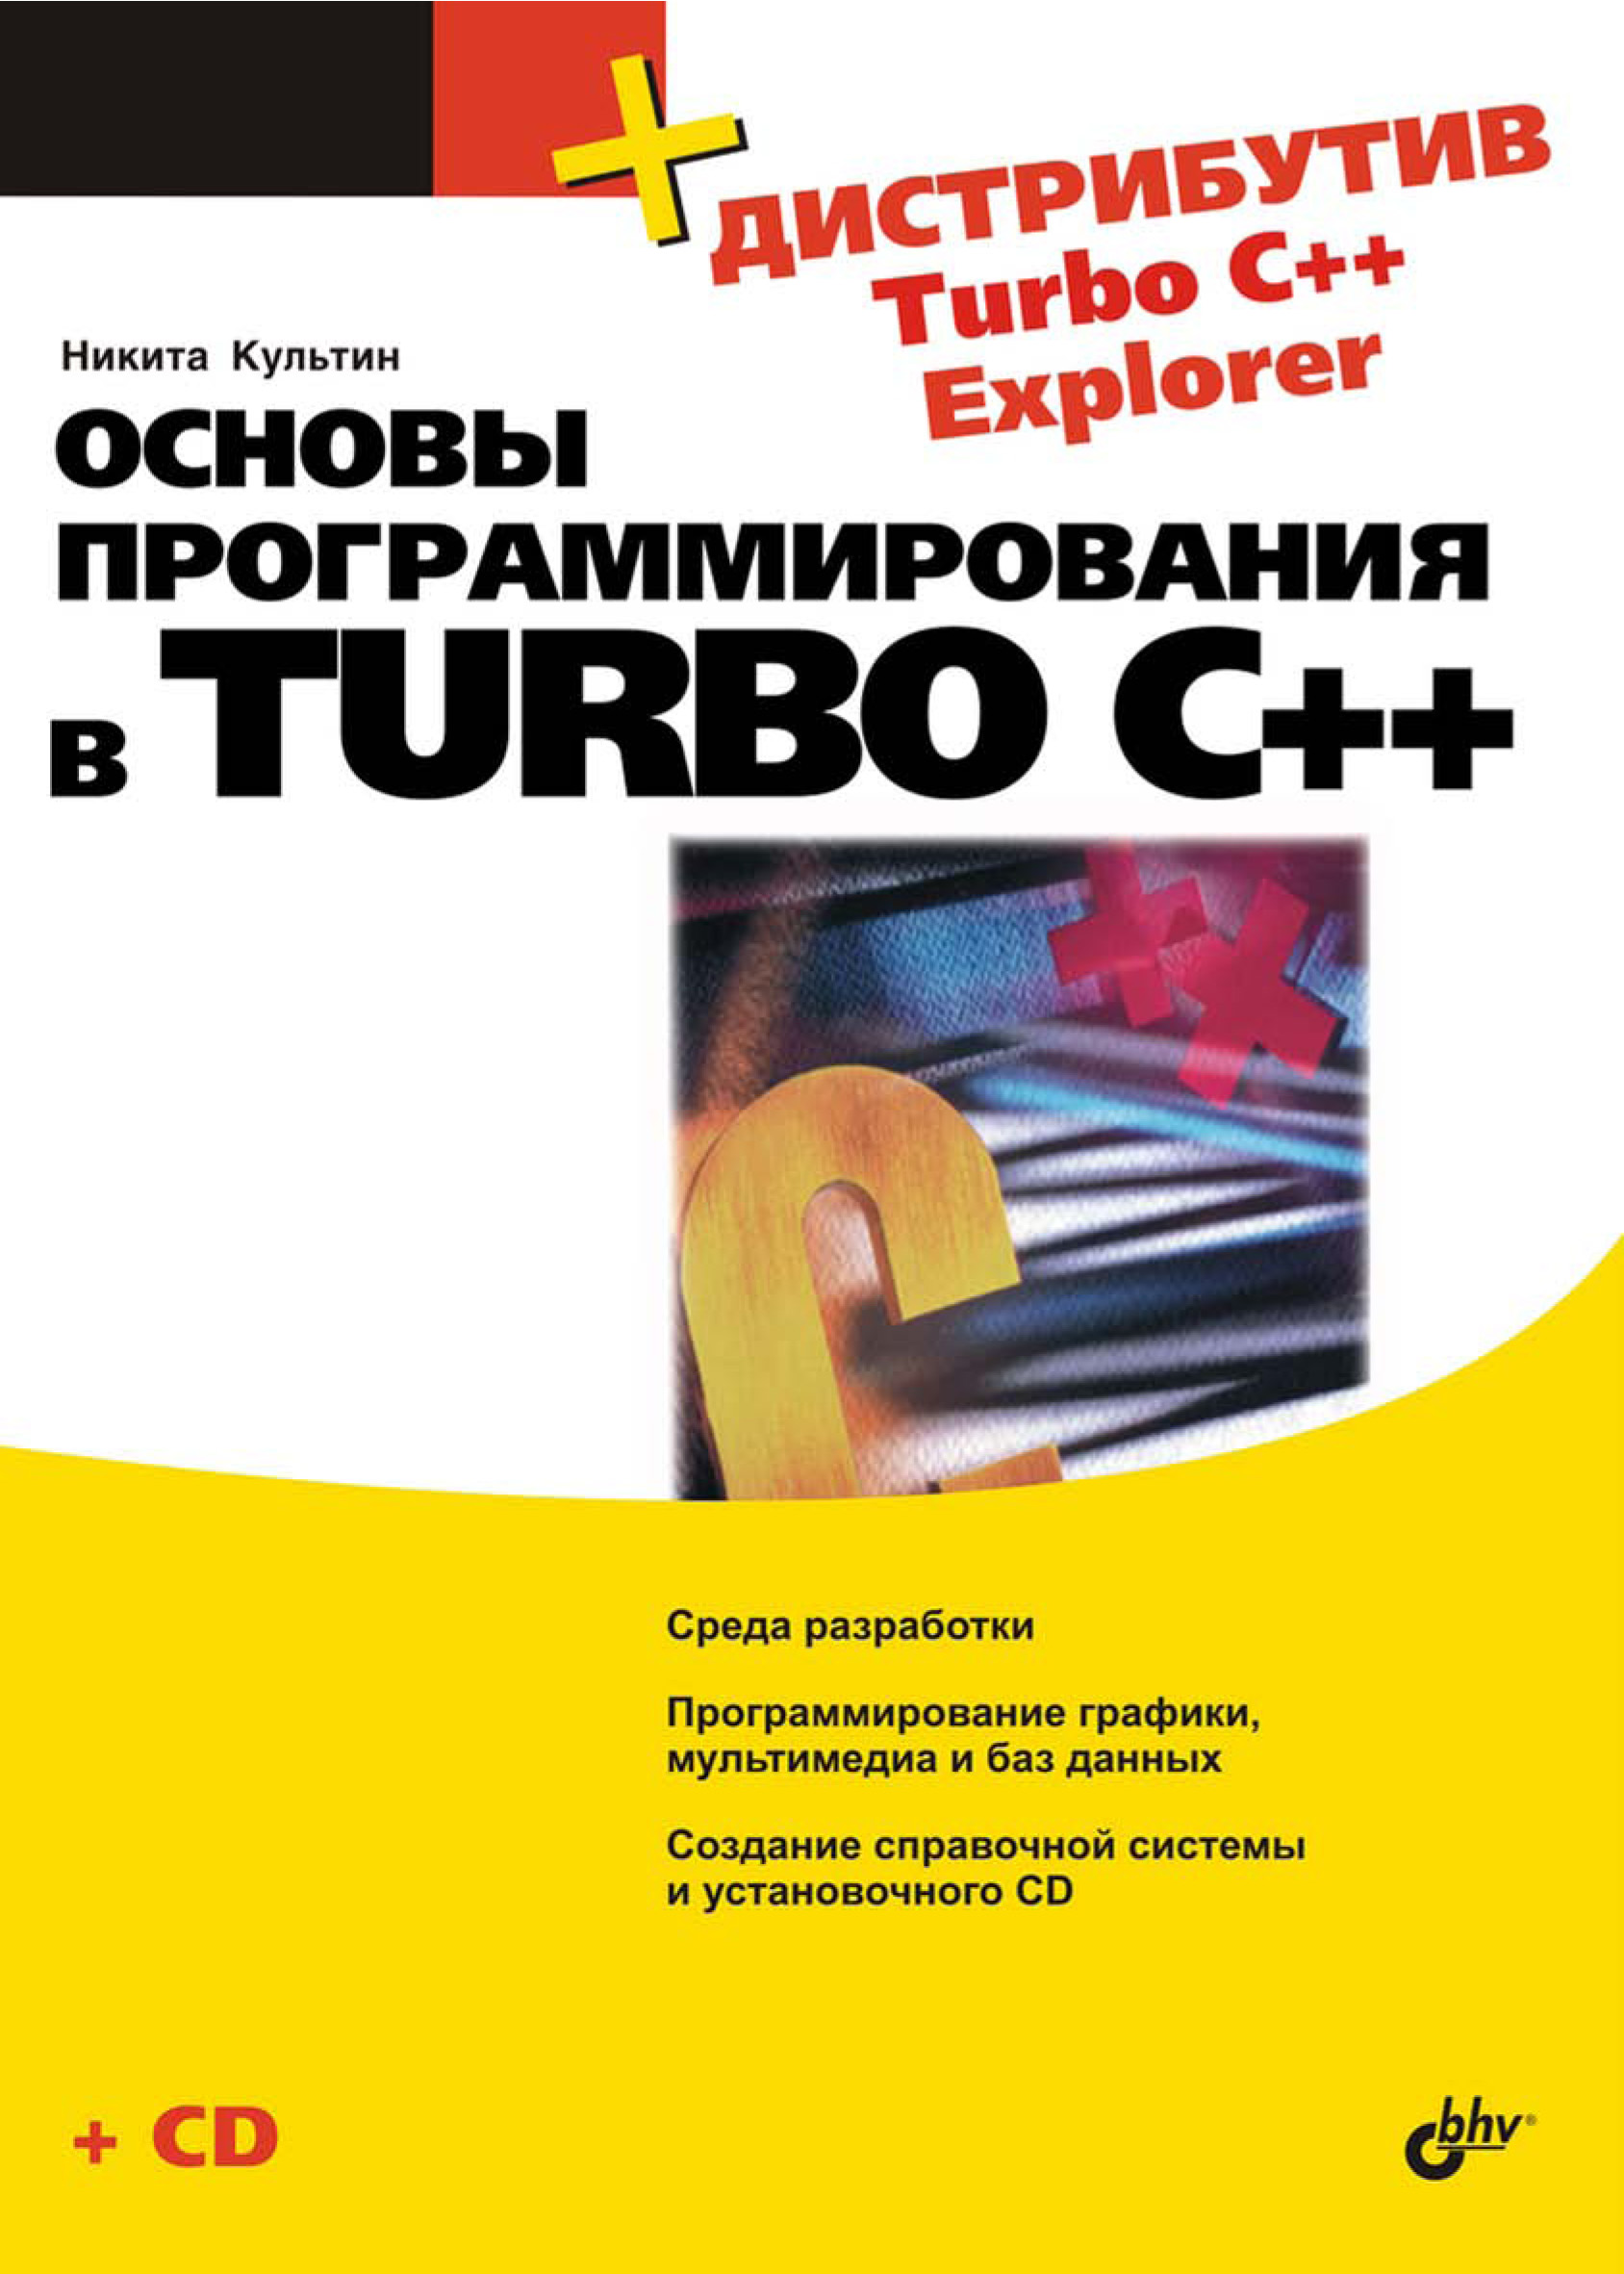 Книга  Основы программирования в Turbo C++ созданная Никита Культин может относится к жанру программирование. Стоимость электронной книги Основы программирования в Turbo C++ с идентификатором 6987361 составляет 167.00 руб.